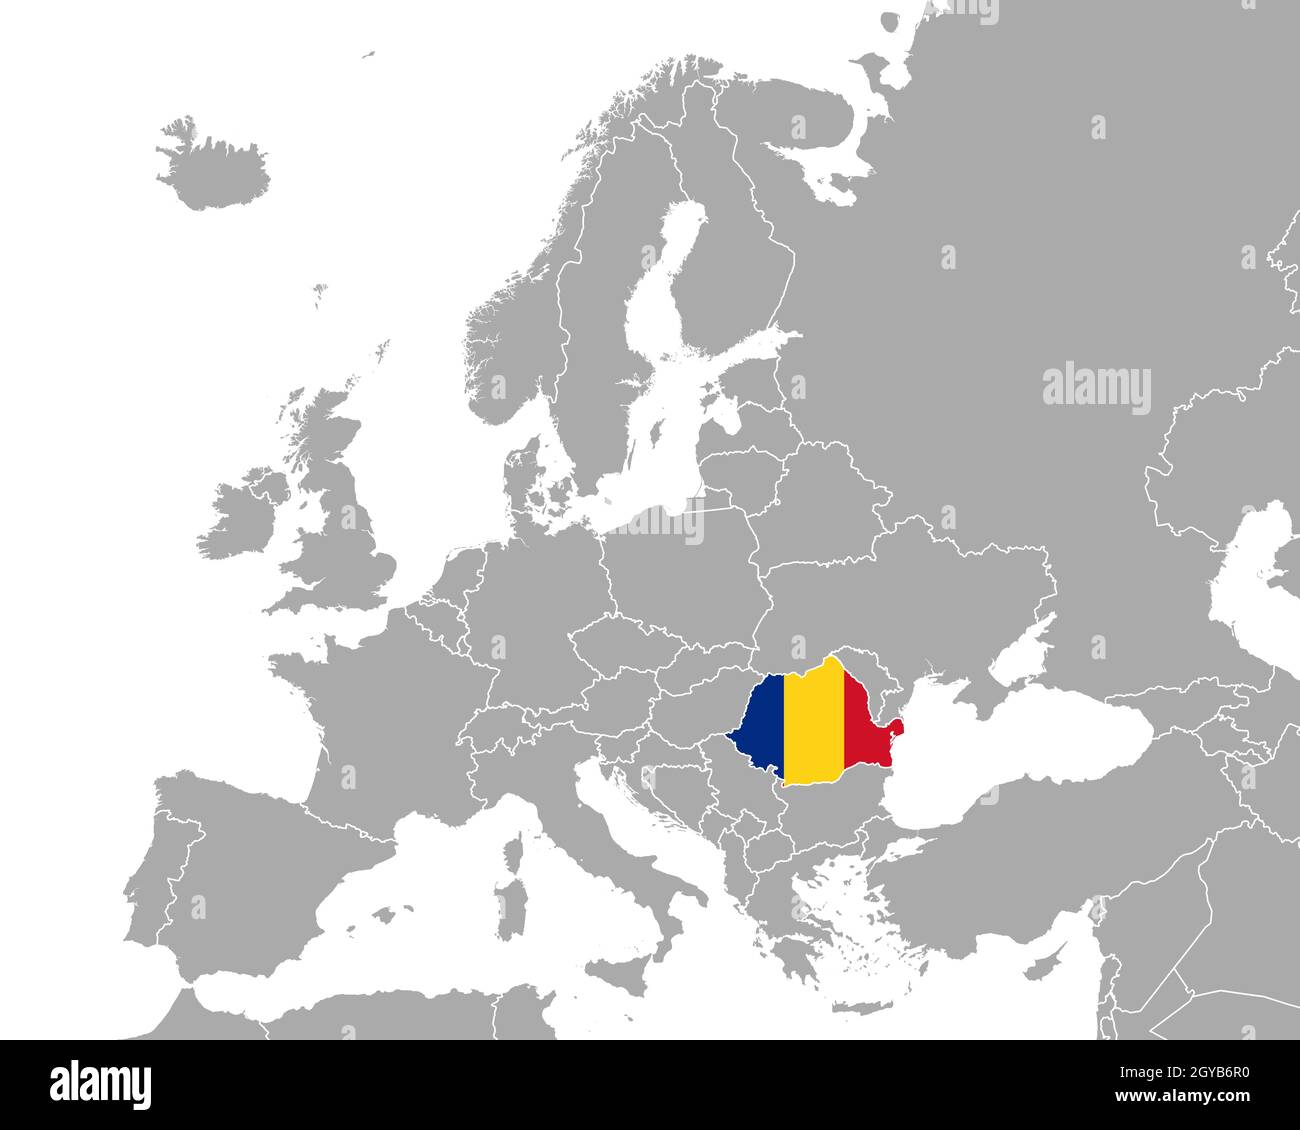 Karte und Fahne von Rumänien in Europa Stock Photo